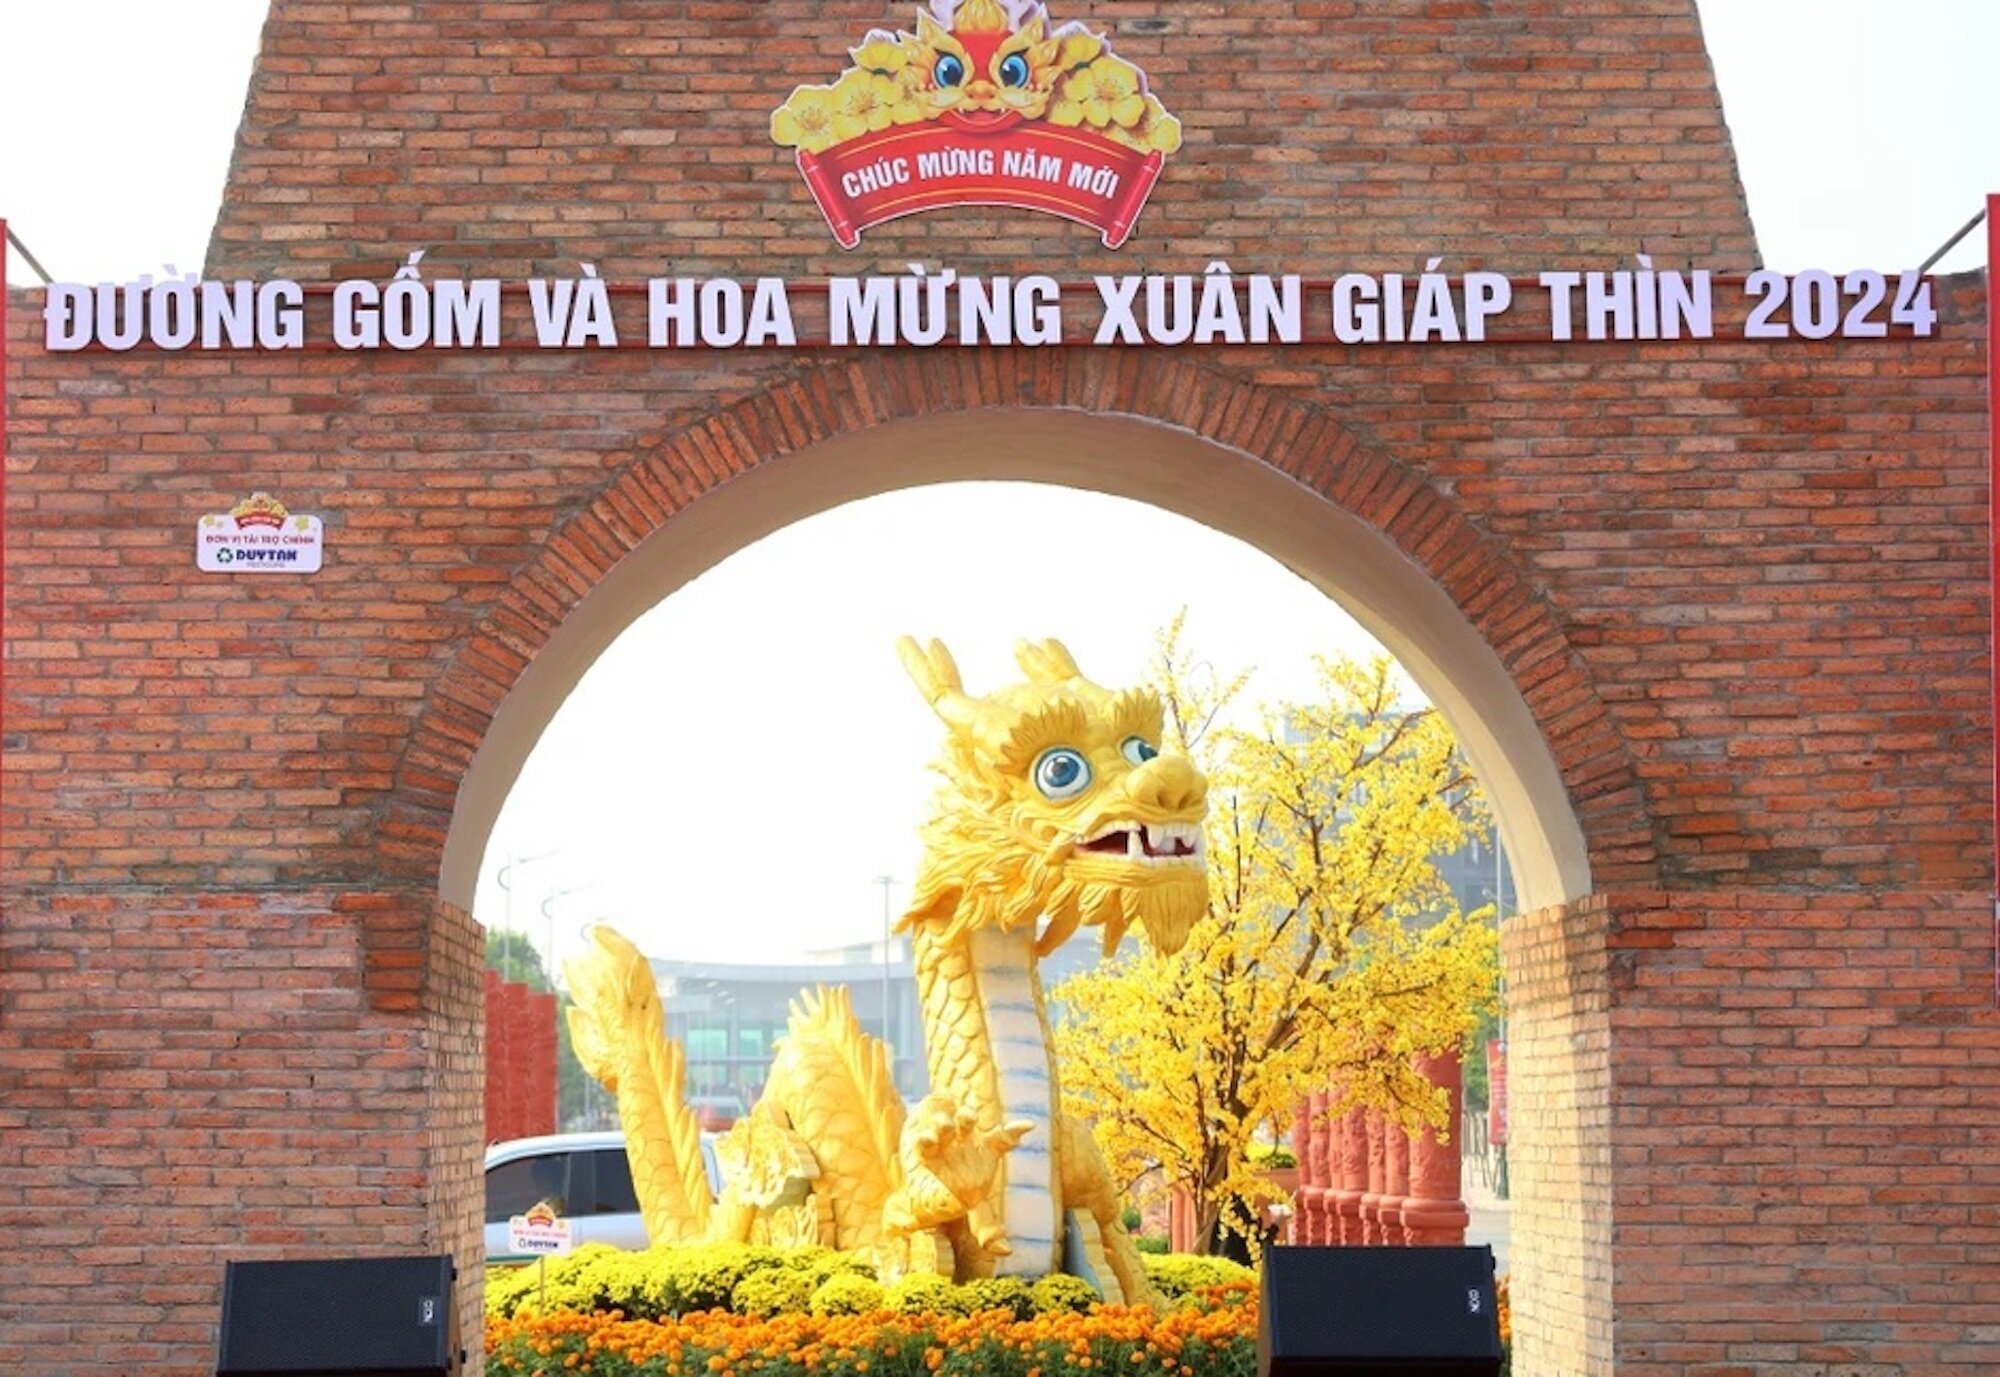 Hình ảnh Long trụ (linh vật rồng) tại con đường gốm và hoa dài nhất Việt Nam do tỉnh Vĩnh Long thực hiện. (Ảnh: Báo Vĩnh Long)